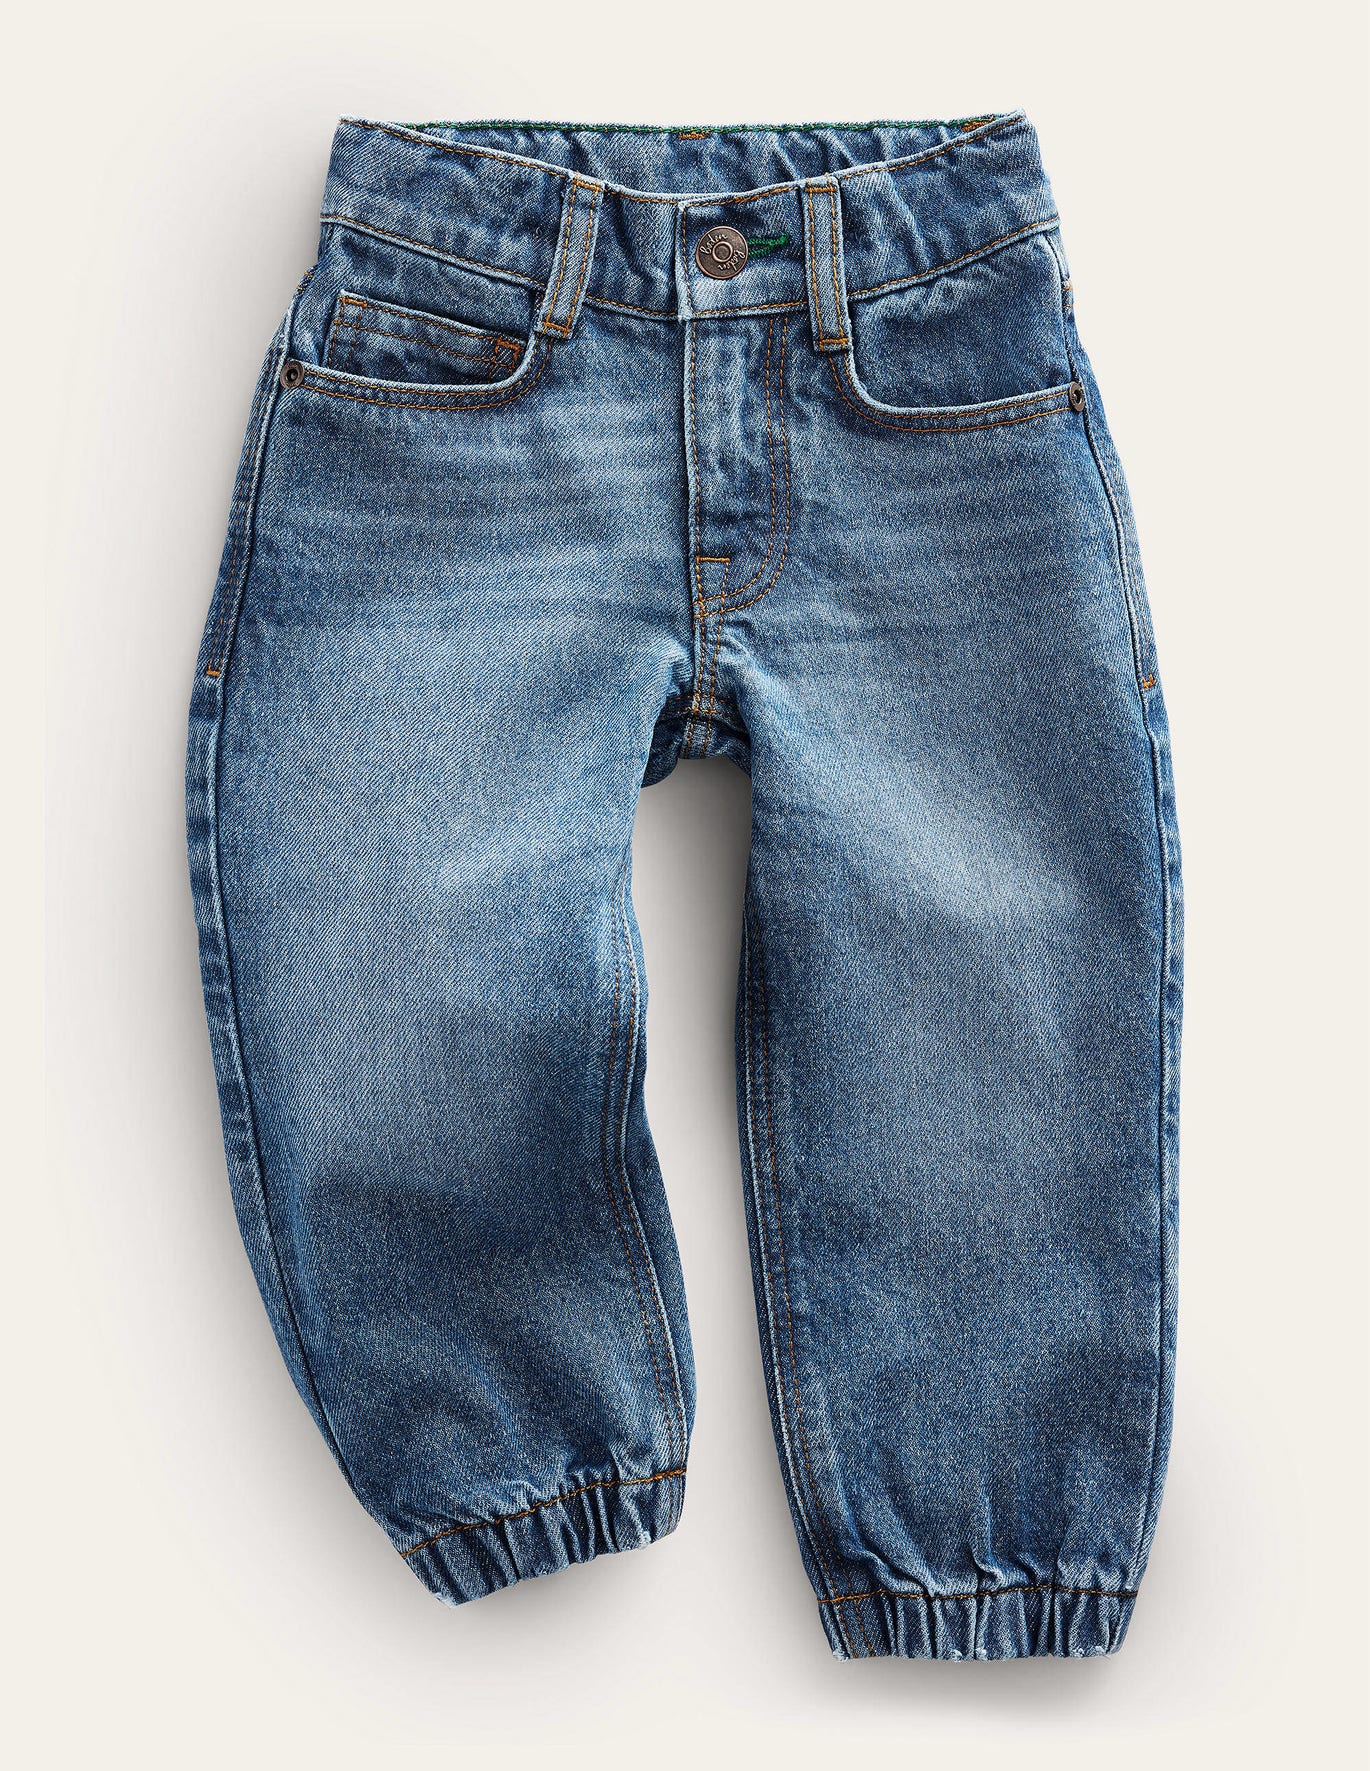 Boden Cuffed Denim Jean - Light Vintage Wash